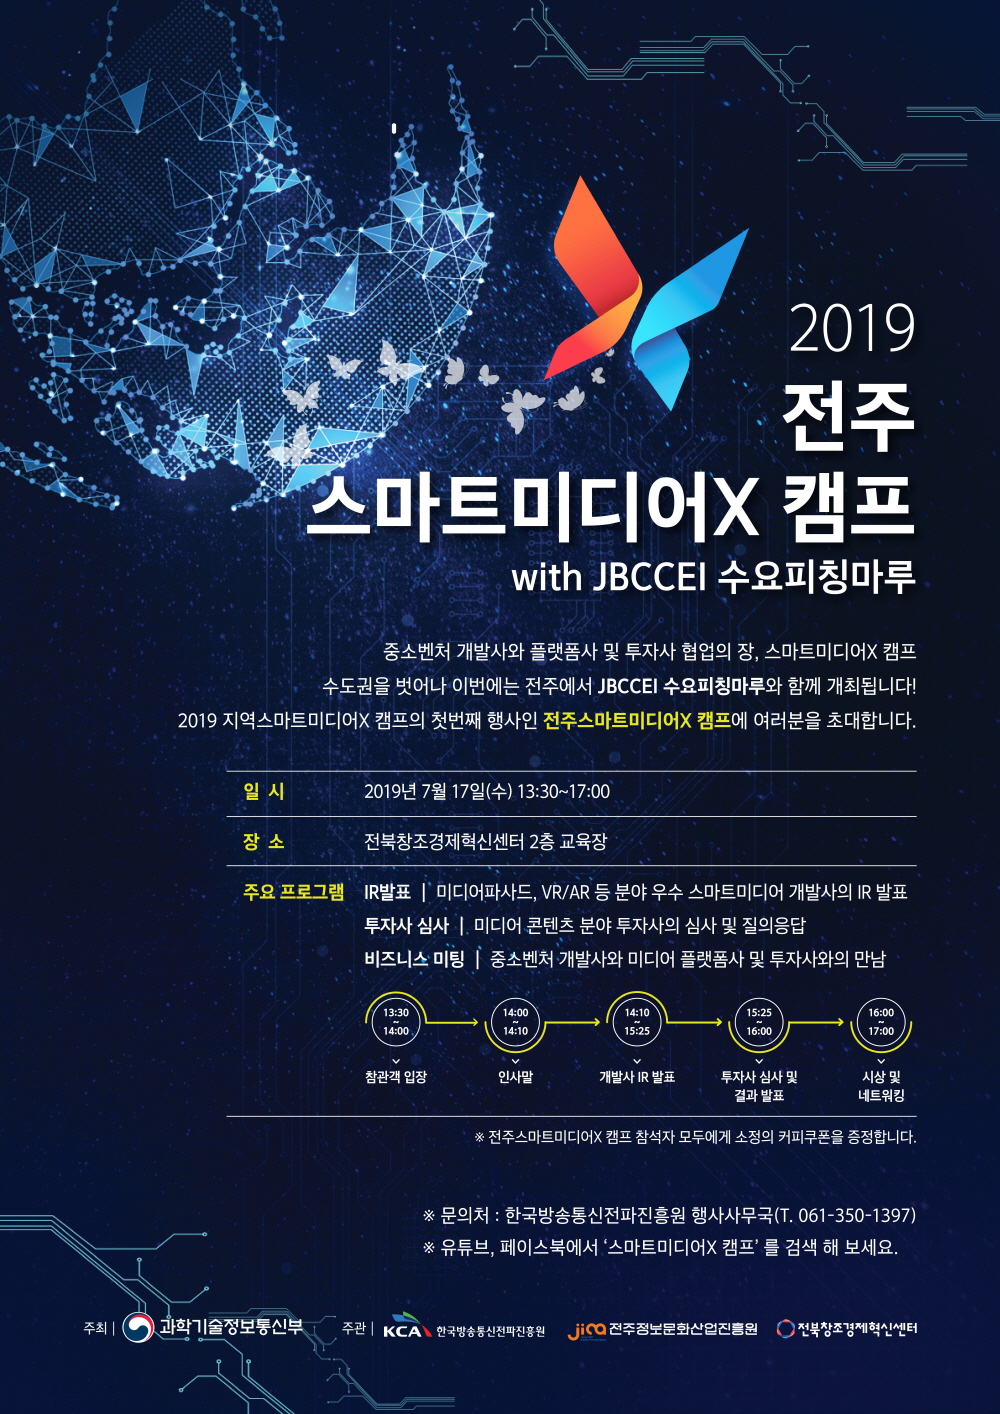 2019 전주스마트미디어X 캠프 with JBCCEI 수요피칭마루